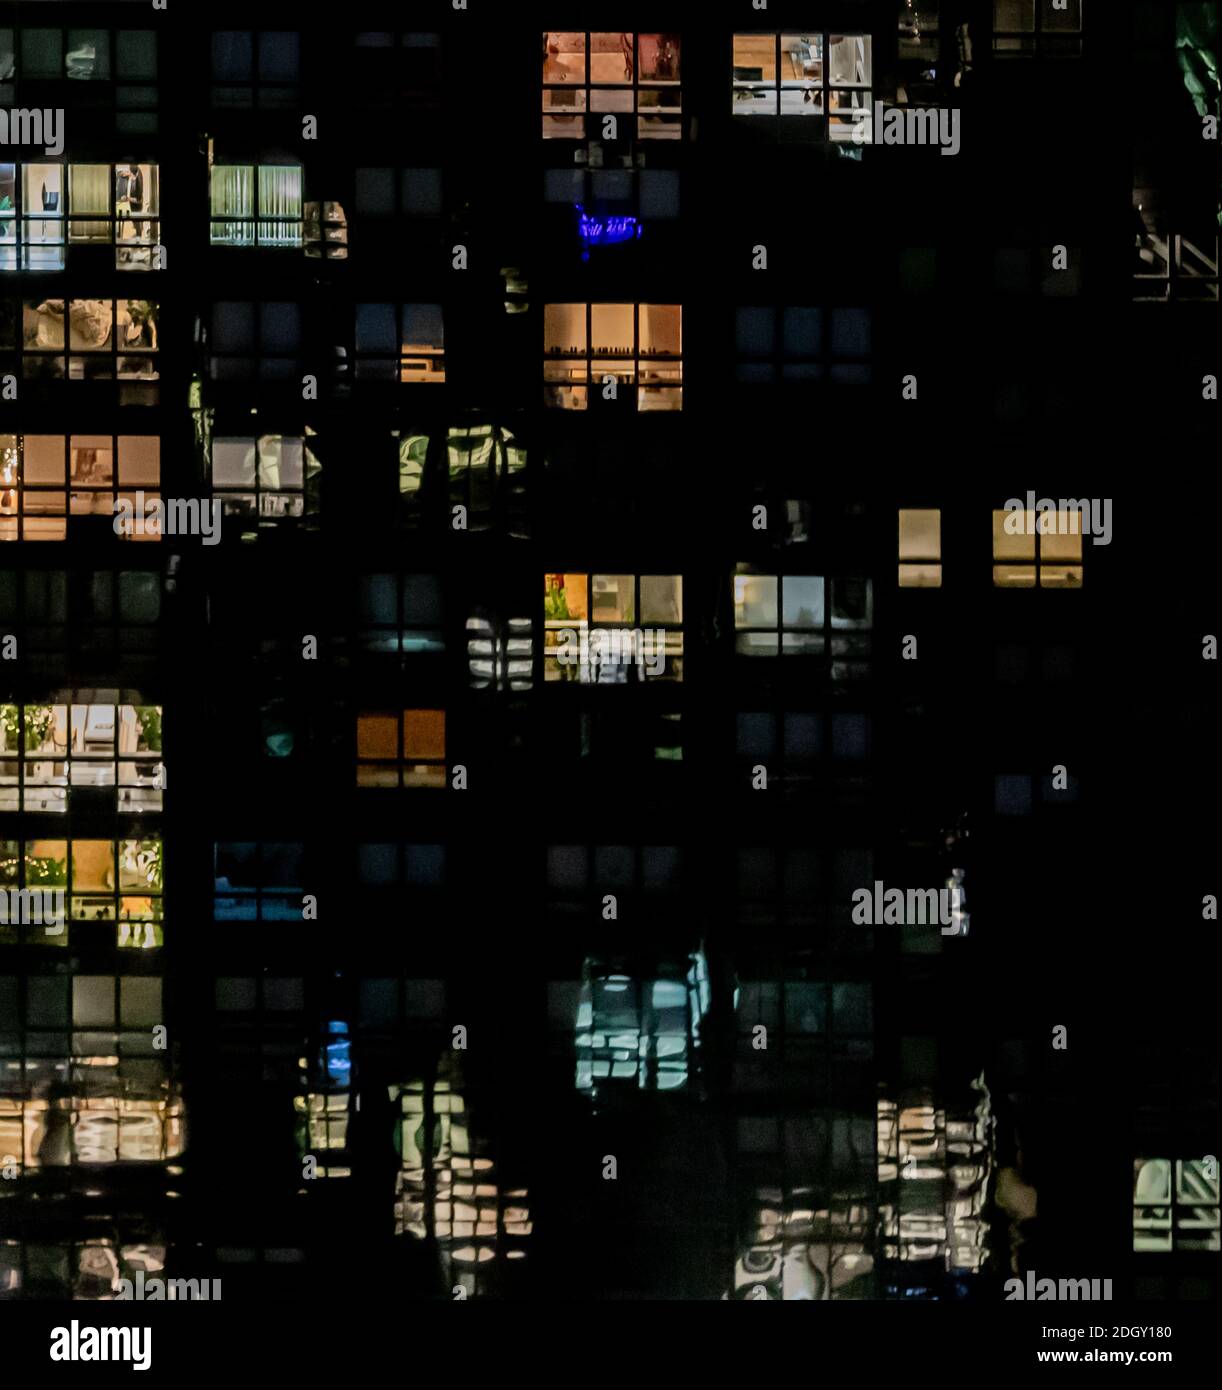 Detailbild von mehreren Etagen eines Wohnhauses in NYC Nachts Stockfoto